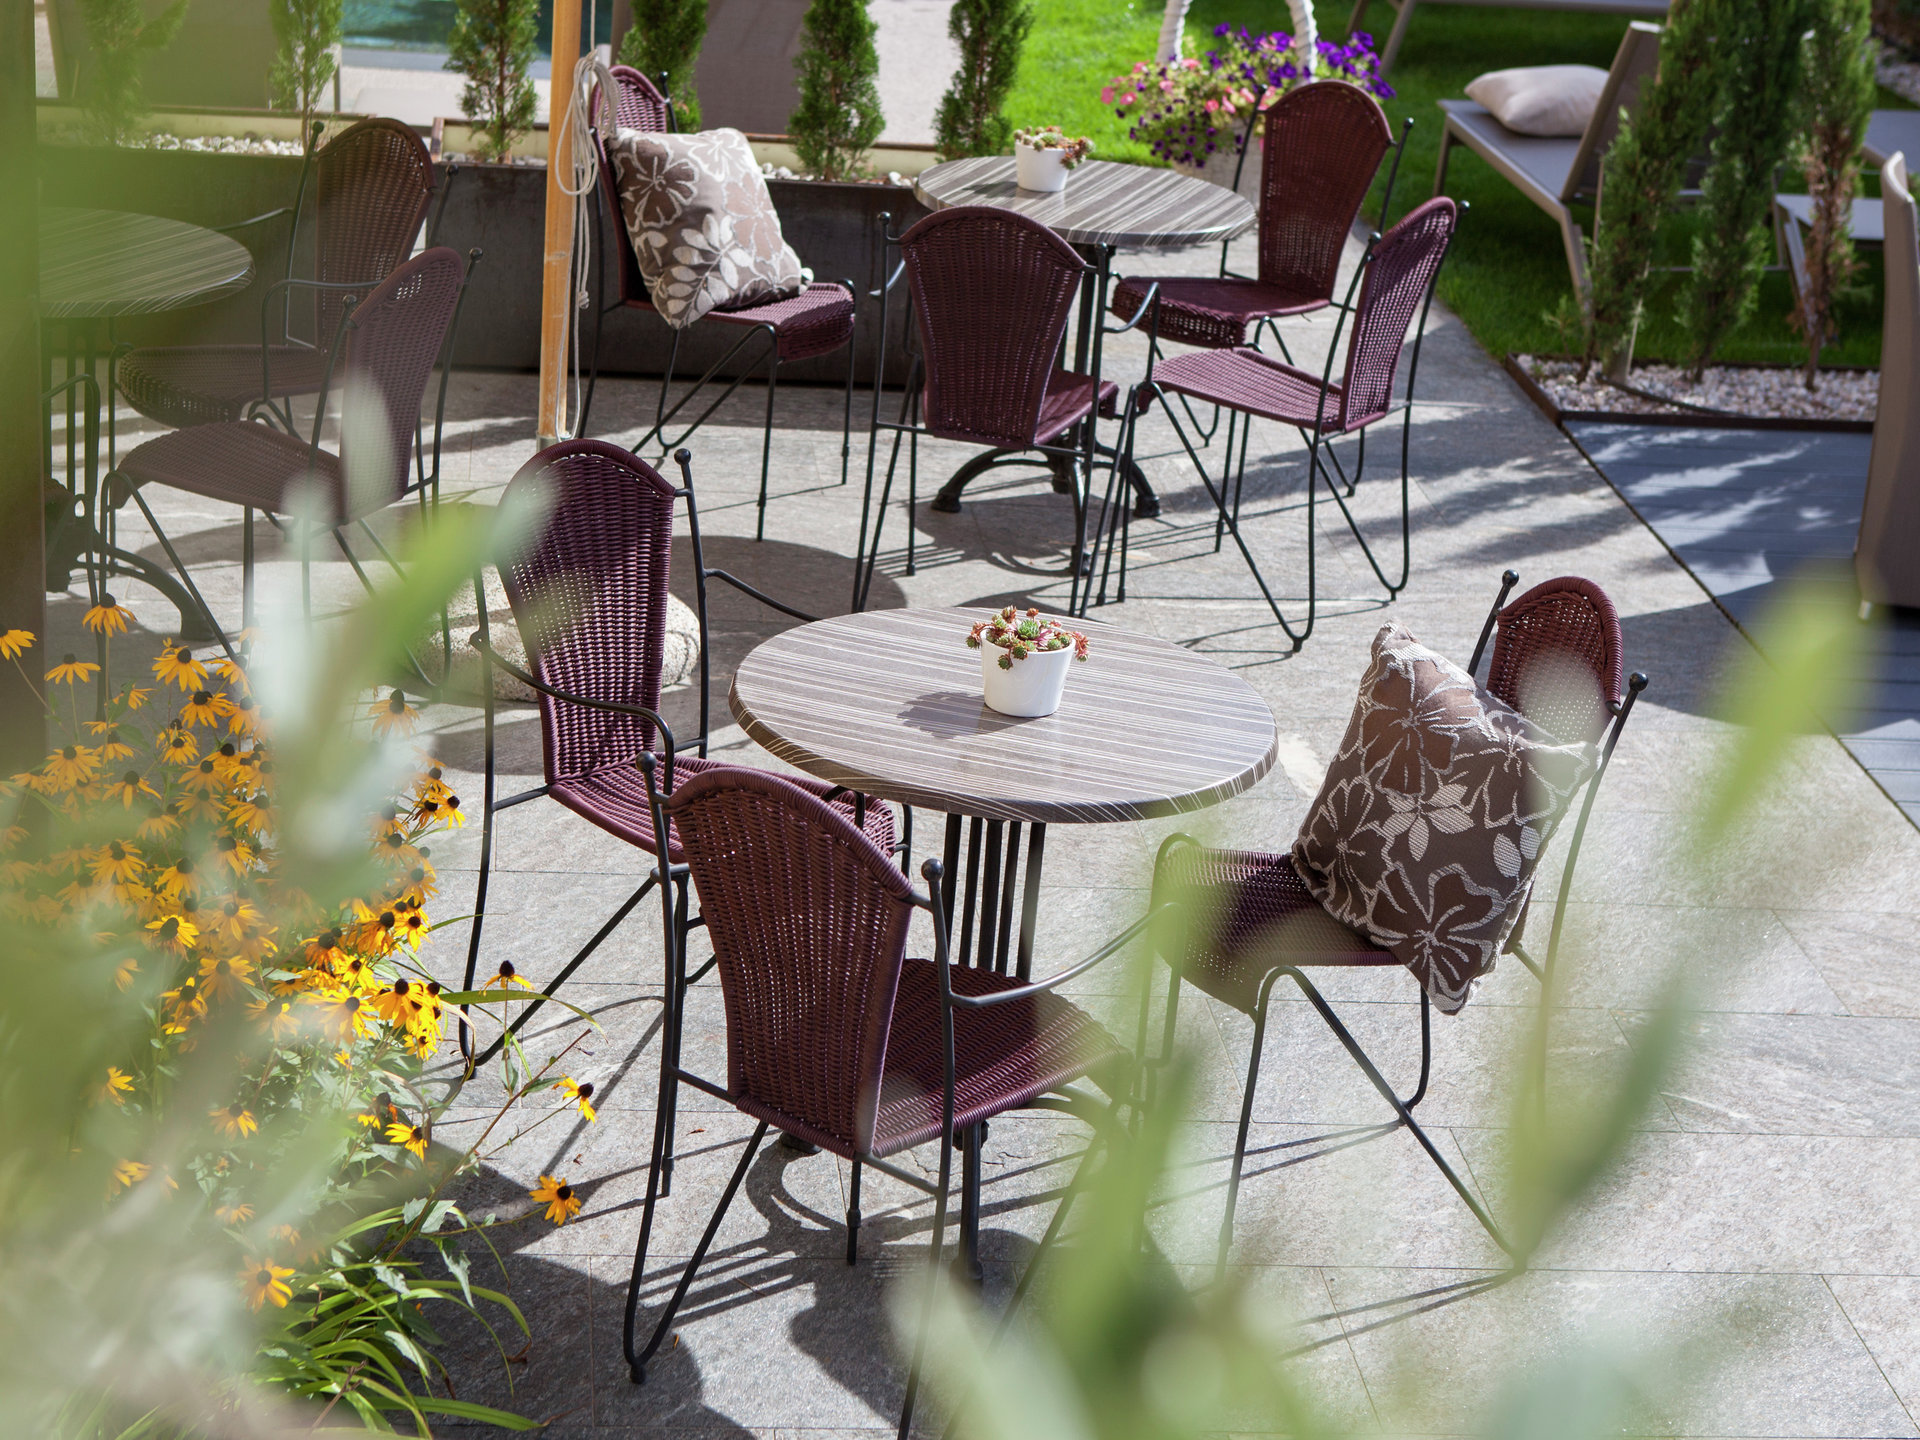 Rilassati e distenditi sulla nostra terrazza con un buon bicchiere di vino o un Aperol Spritz.